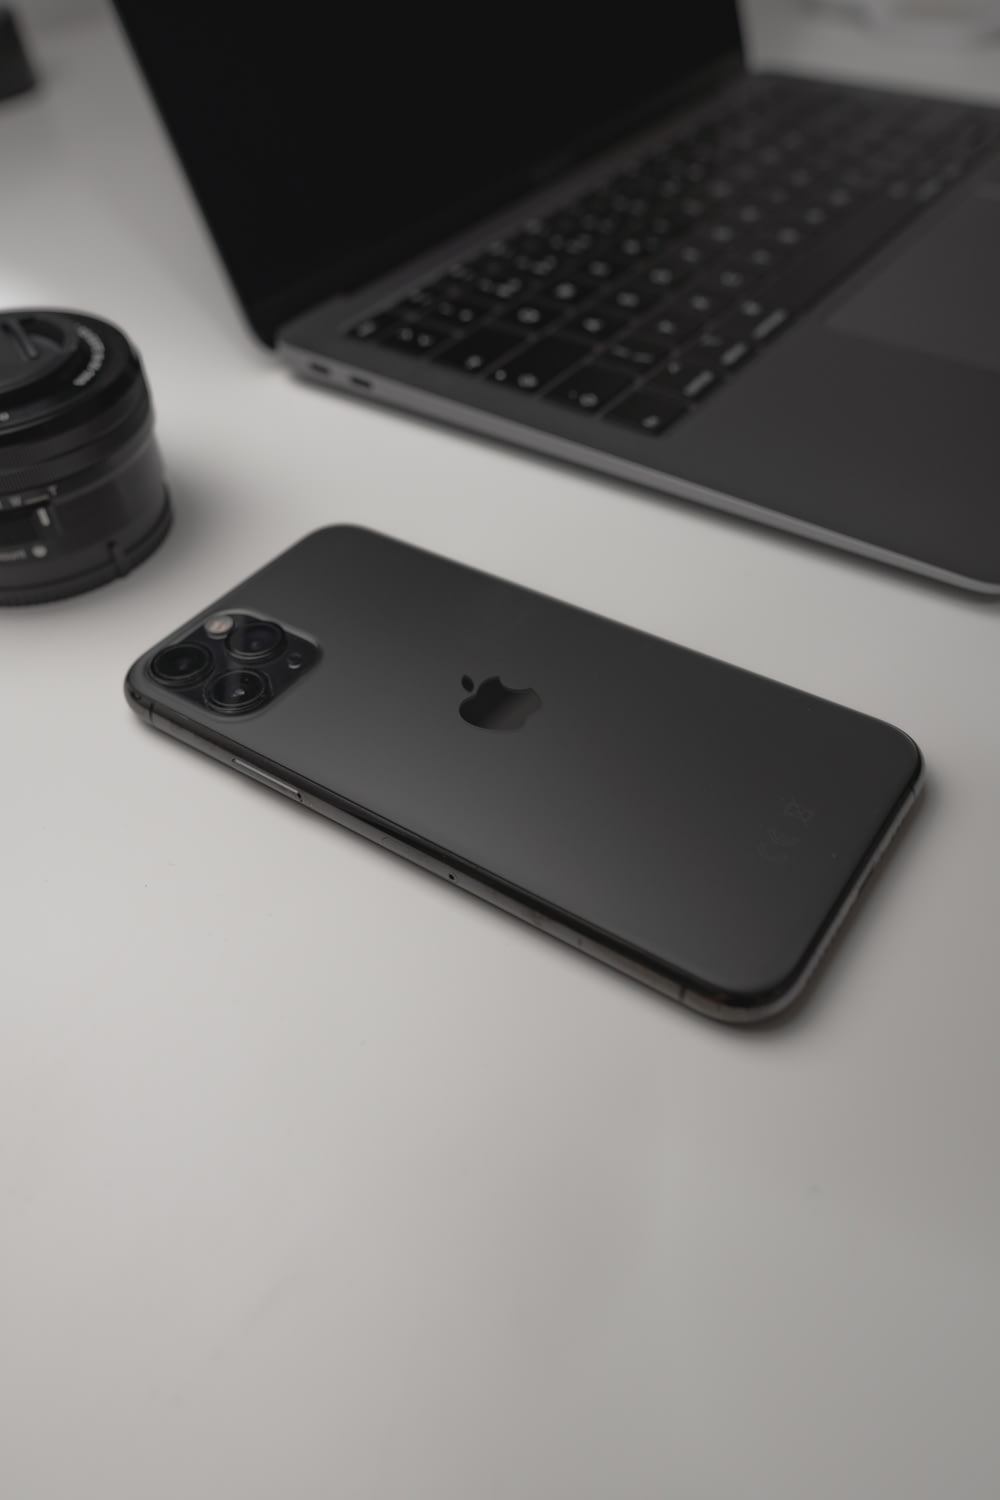 검은 색 카메라 렌즈와 검은 색 카메라 렌즈 옆에 검은 색 아이폰 7